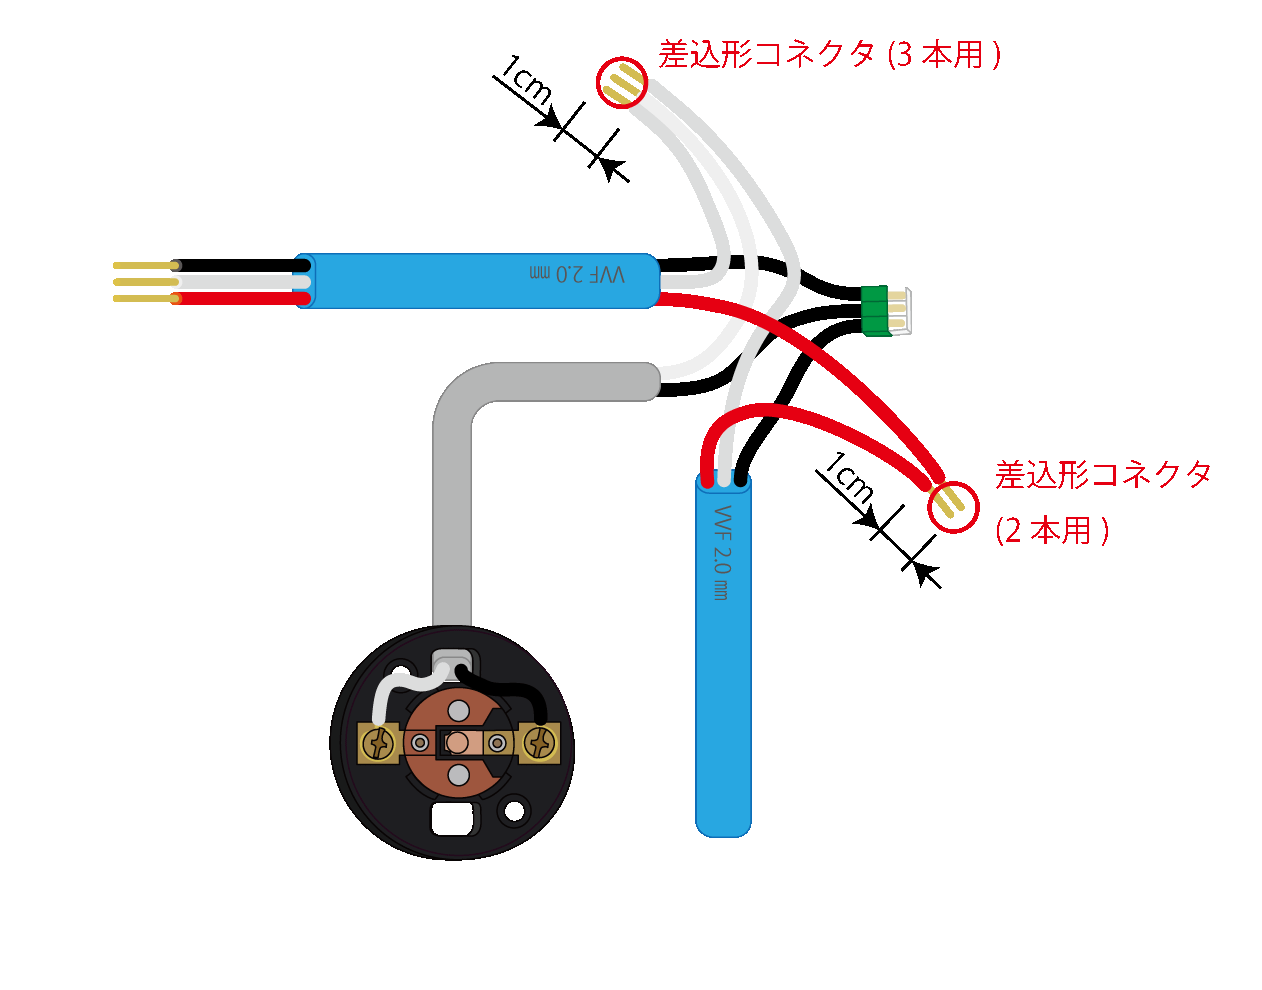 差込形コネクタによる電線相互の接続